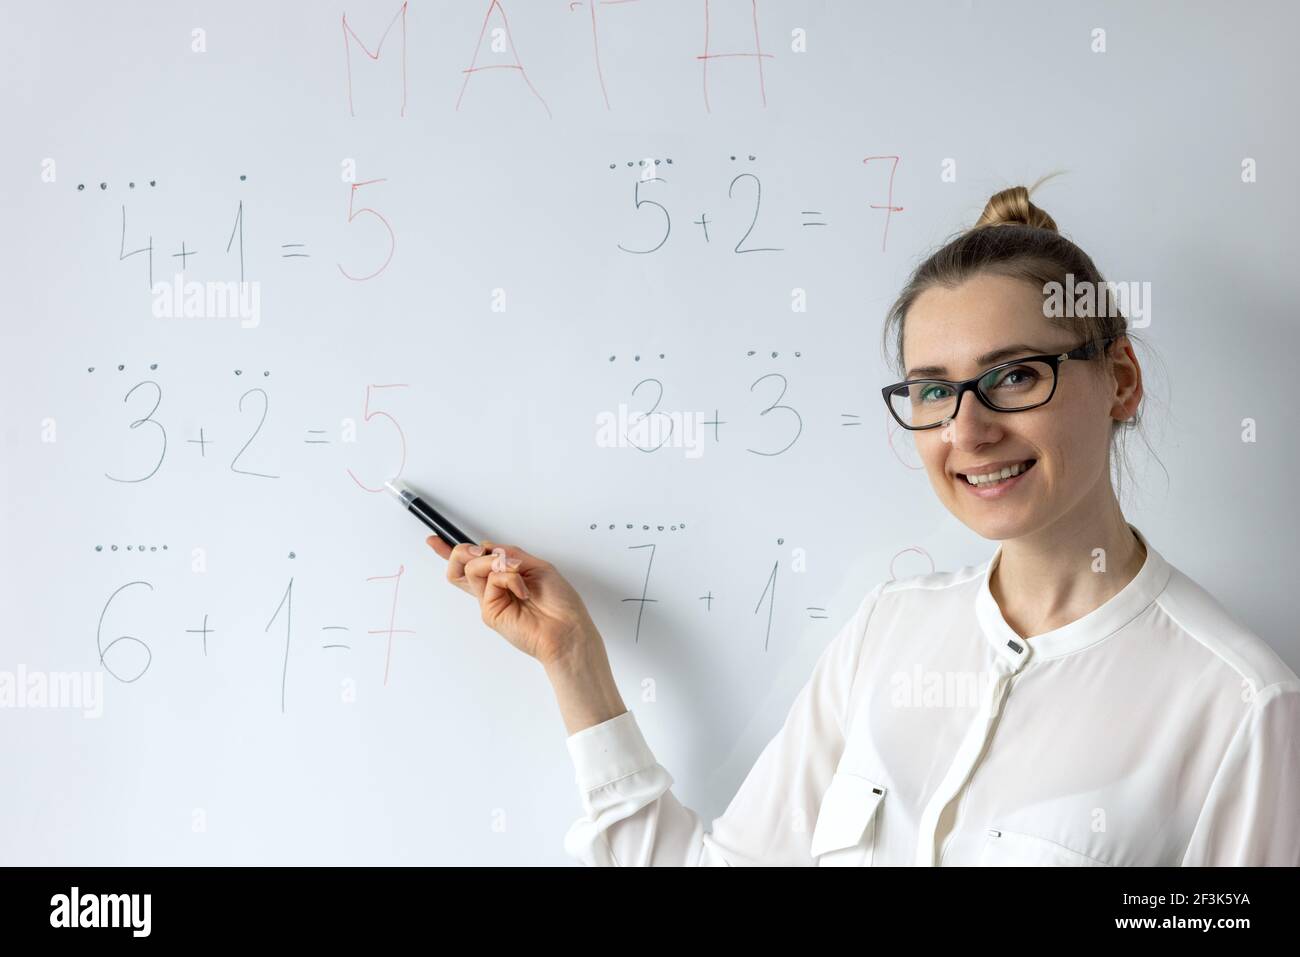 Mathe Lehrer erklärt Grundschule grundlegende Mathematik auf Whiteboard in Schulungsraum Stockfoto